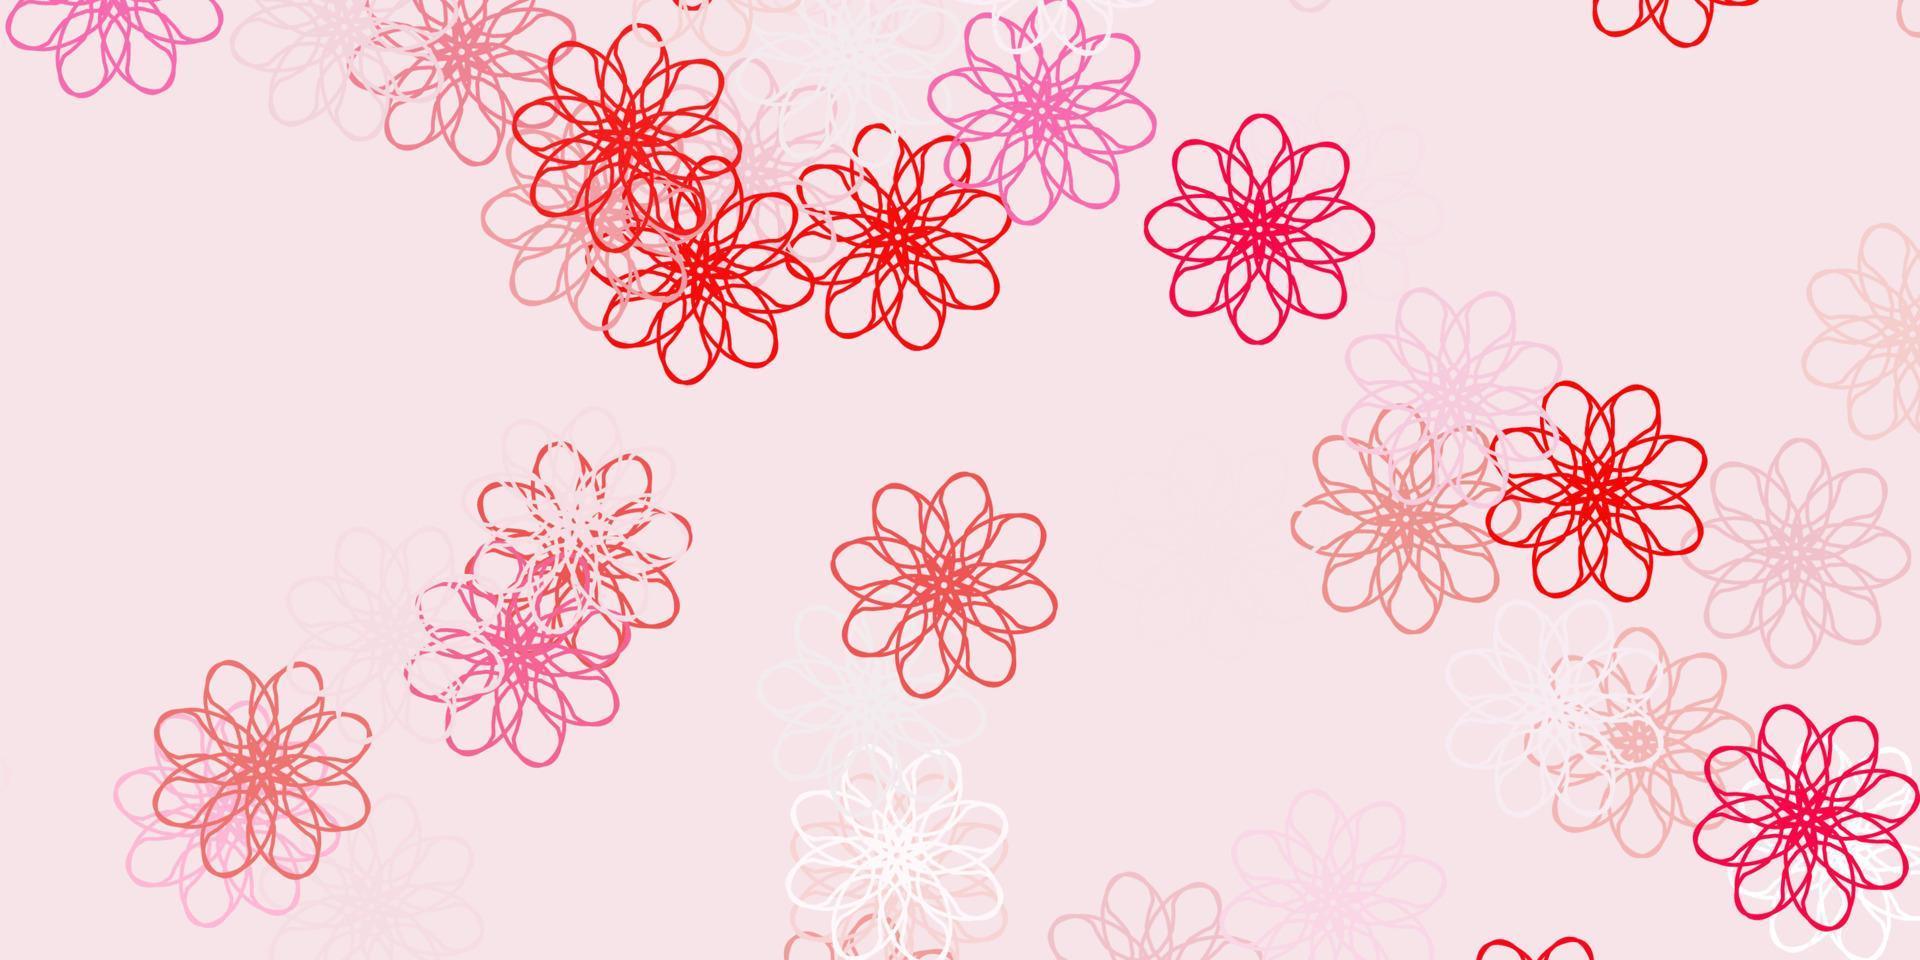 motif de doodle vecteur rouge clair avec des fleurs.